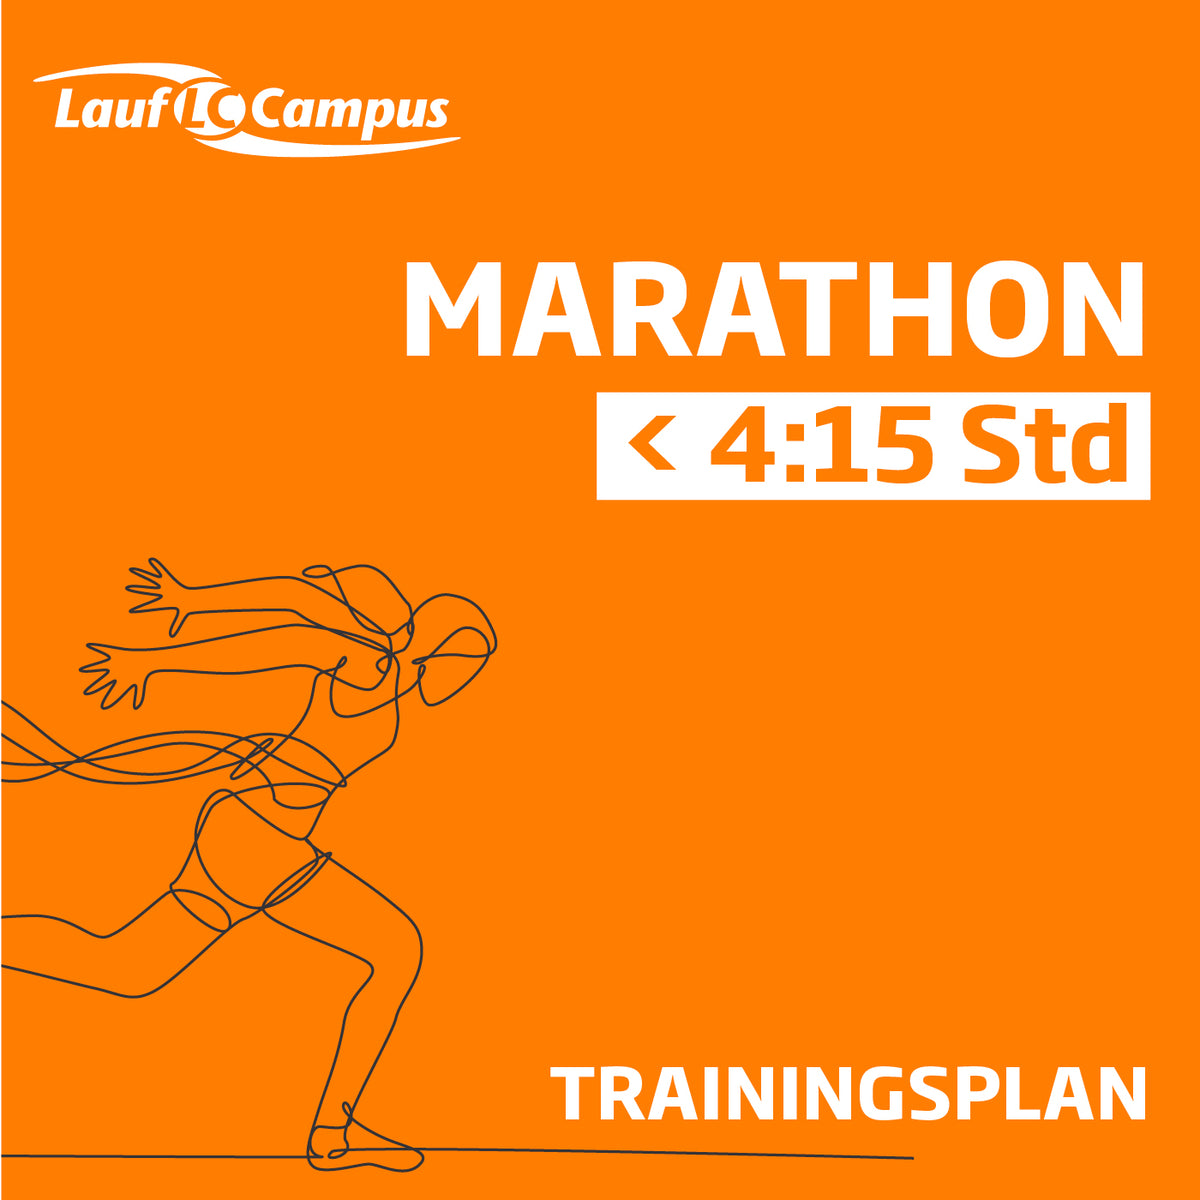 Trainingsplan für Marathon unter 4:15 Stunden